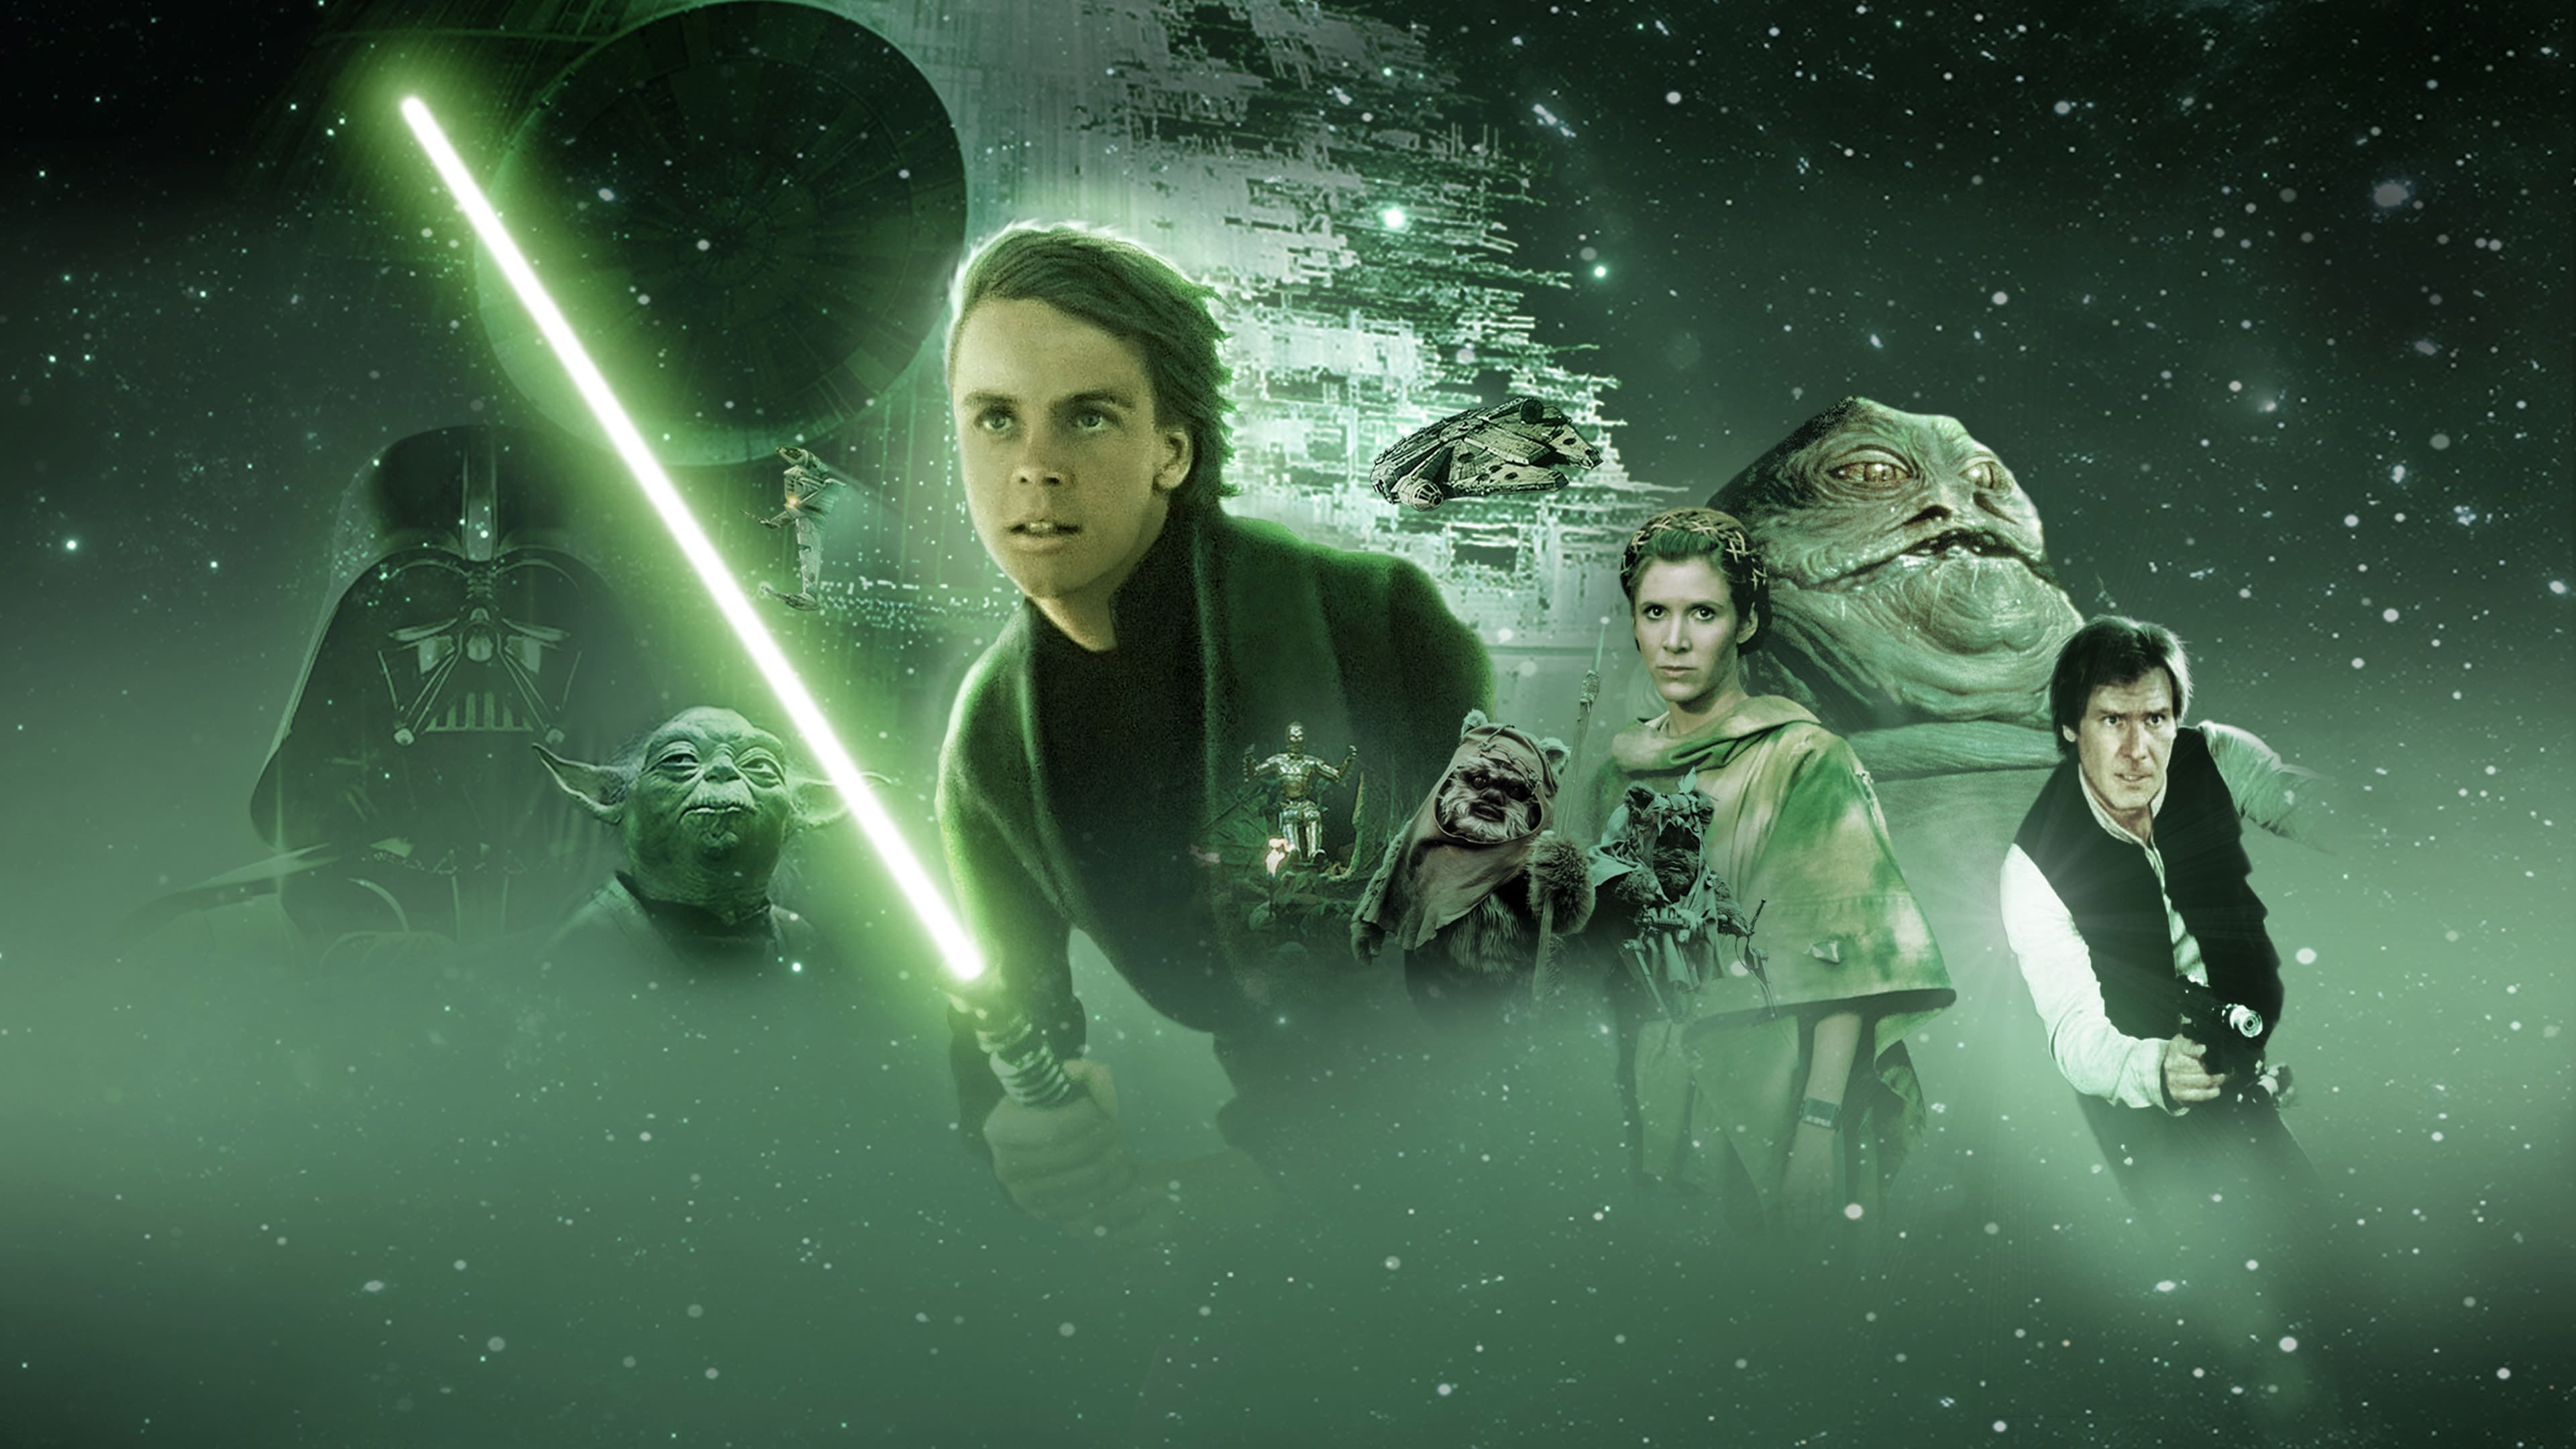 Image du film Star Wars, édition spéciale : le retour du Jedi b5i3wpa2lkxdmqfnnx9nfxnkffgjpg